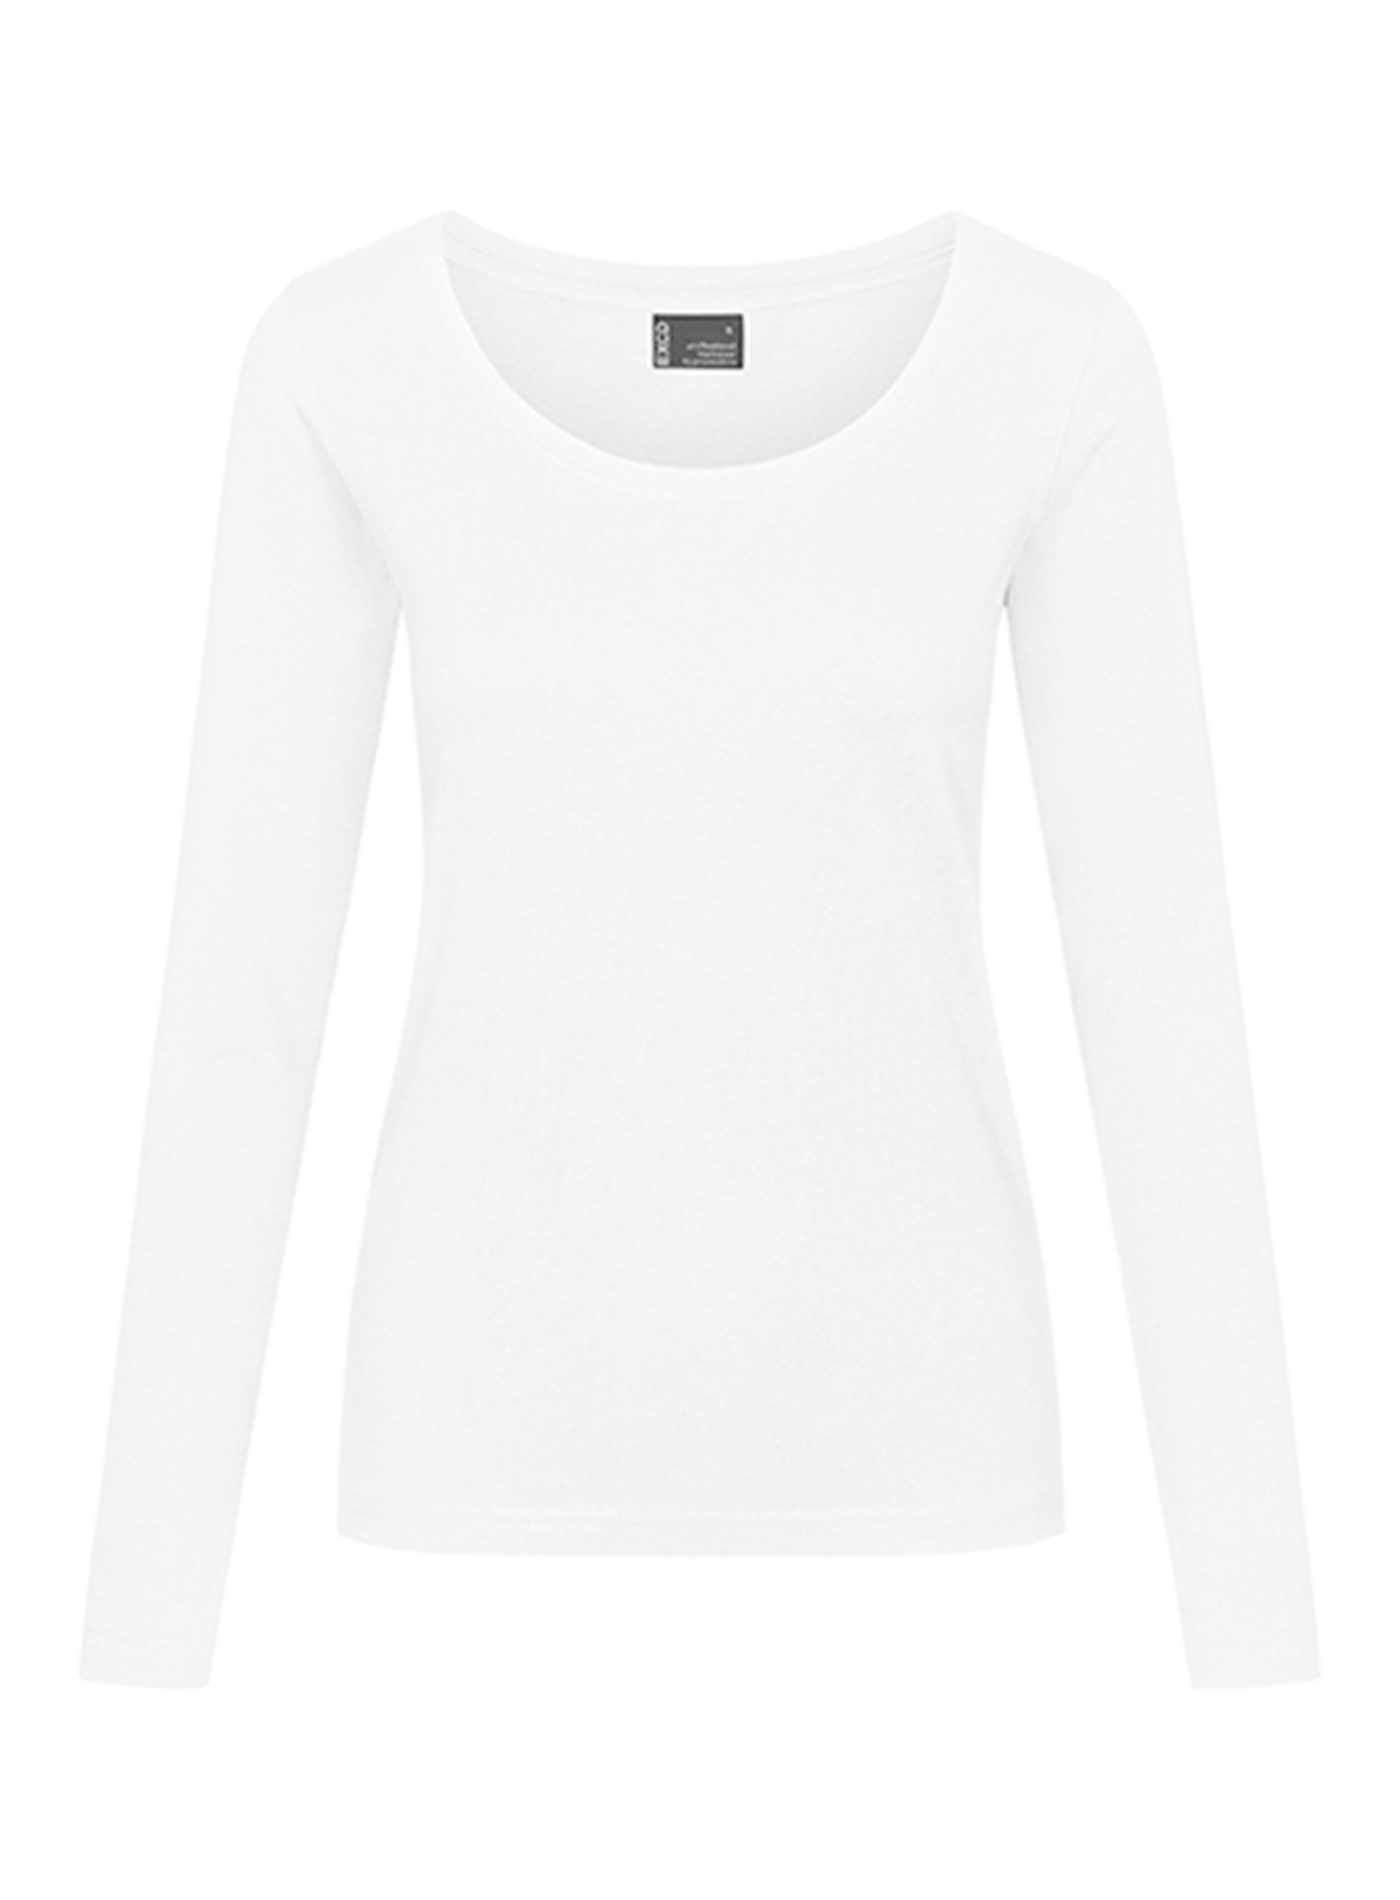 Dámské tričko s dlouhým rukávem Promodoro - Bílá L